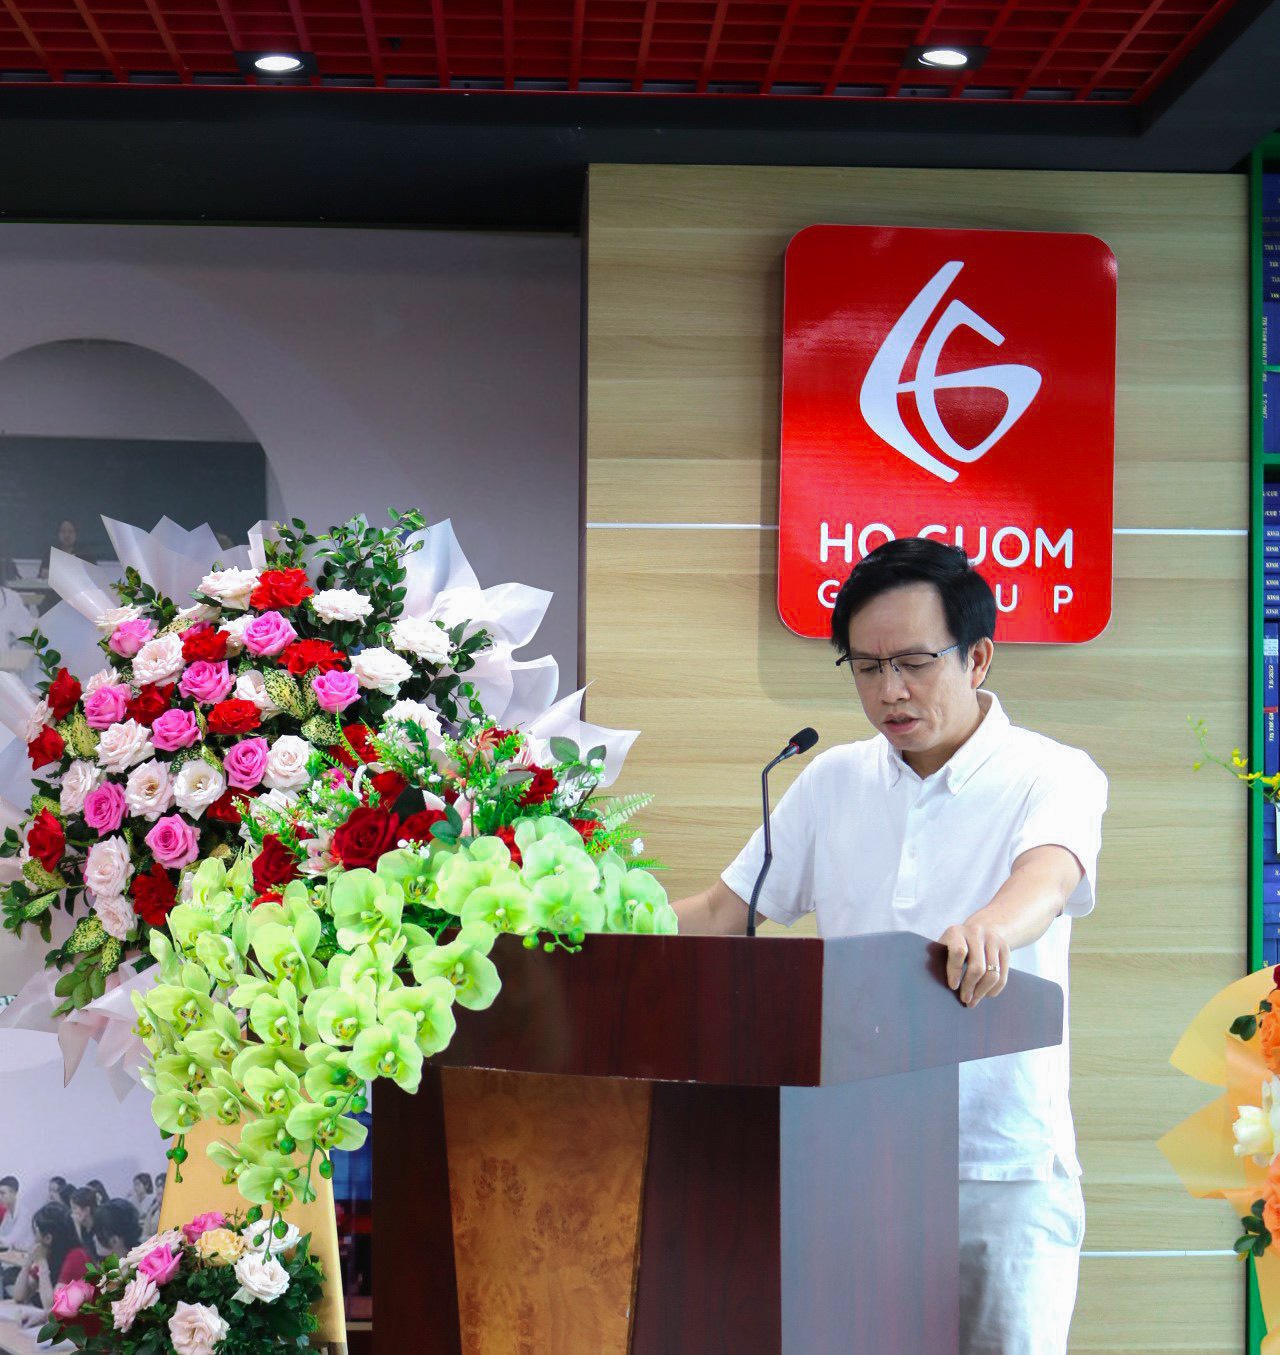 Ông Nguyễn Duy Ninh, Tổng giám đốc khối dịch vụ Tập đoàn Hồ Gươm - Là doanh nhân, chủ đầu tư ở nhiều lĩnh vực như: Nông nghiệp, CNTT, BĐS và Giáo dục chia sẻ